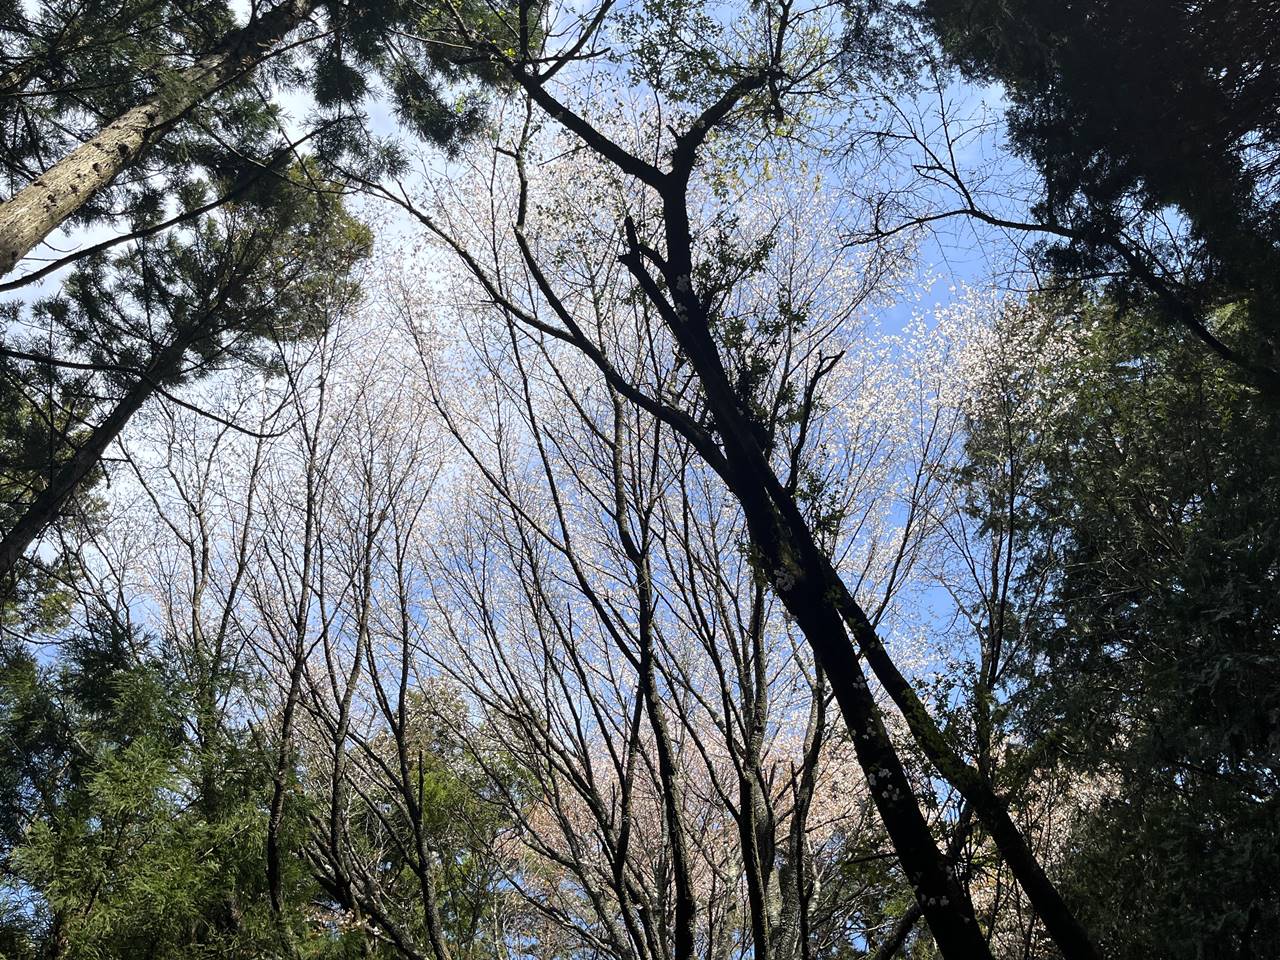 【高尾】生藤山 桜とツツジ咲く春の登山（電車・バス利用）